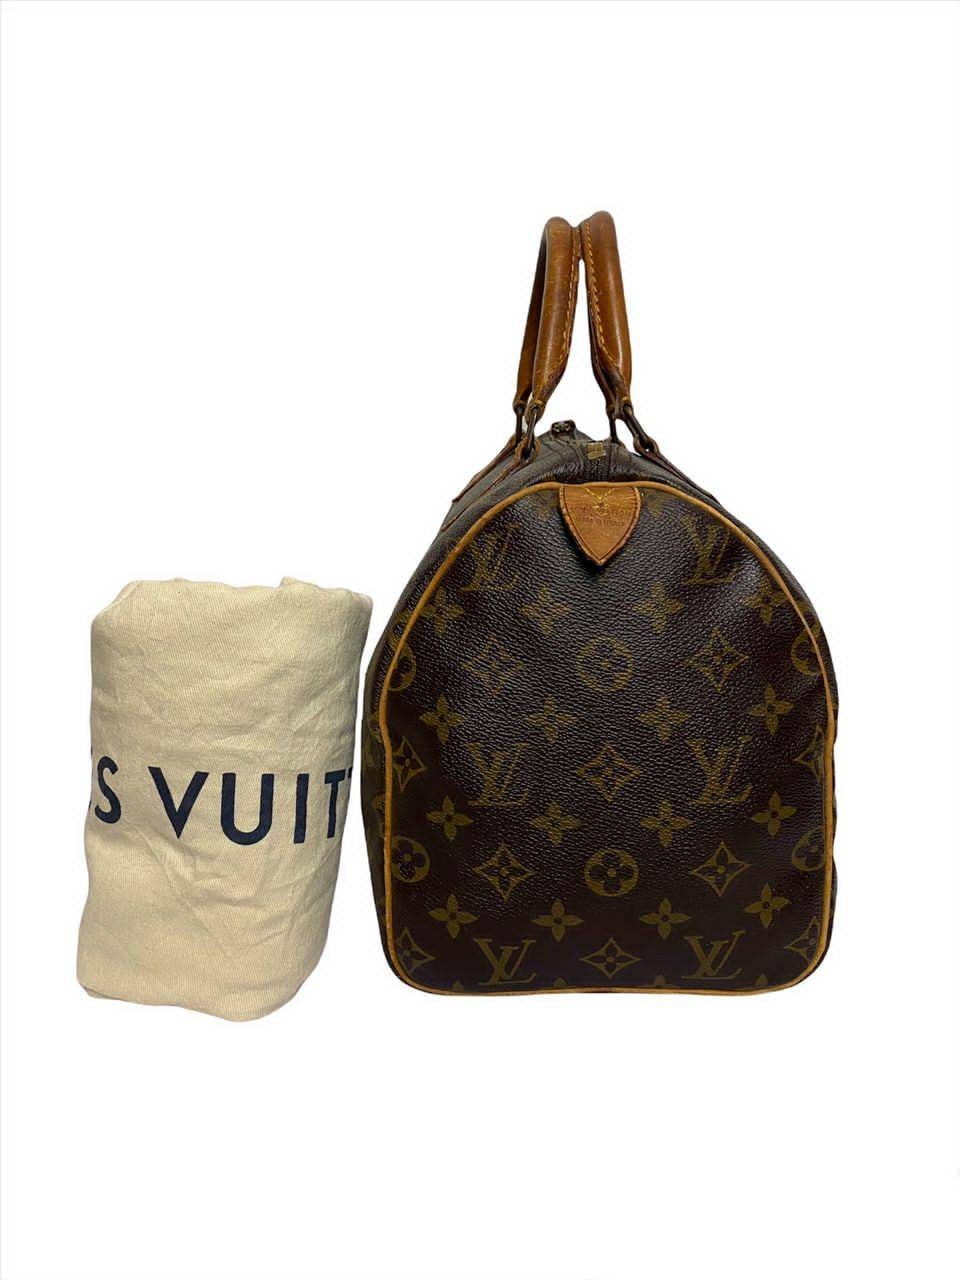 Vintage Louis Vuitton Speedy bags - Our authenticated second-hand bags –  Vintega